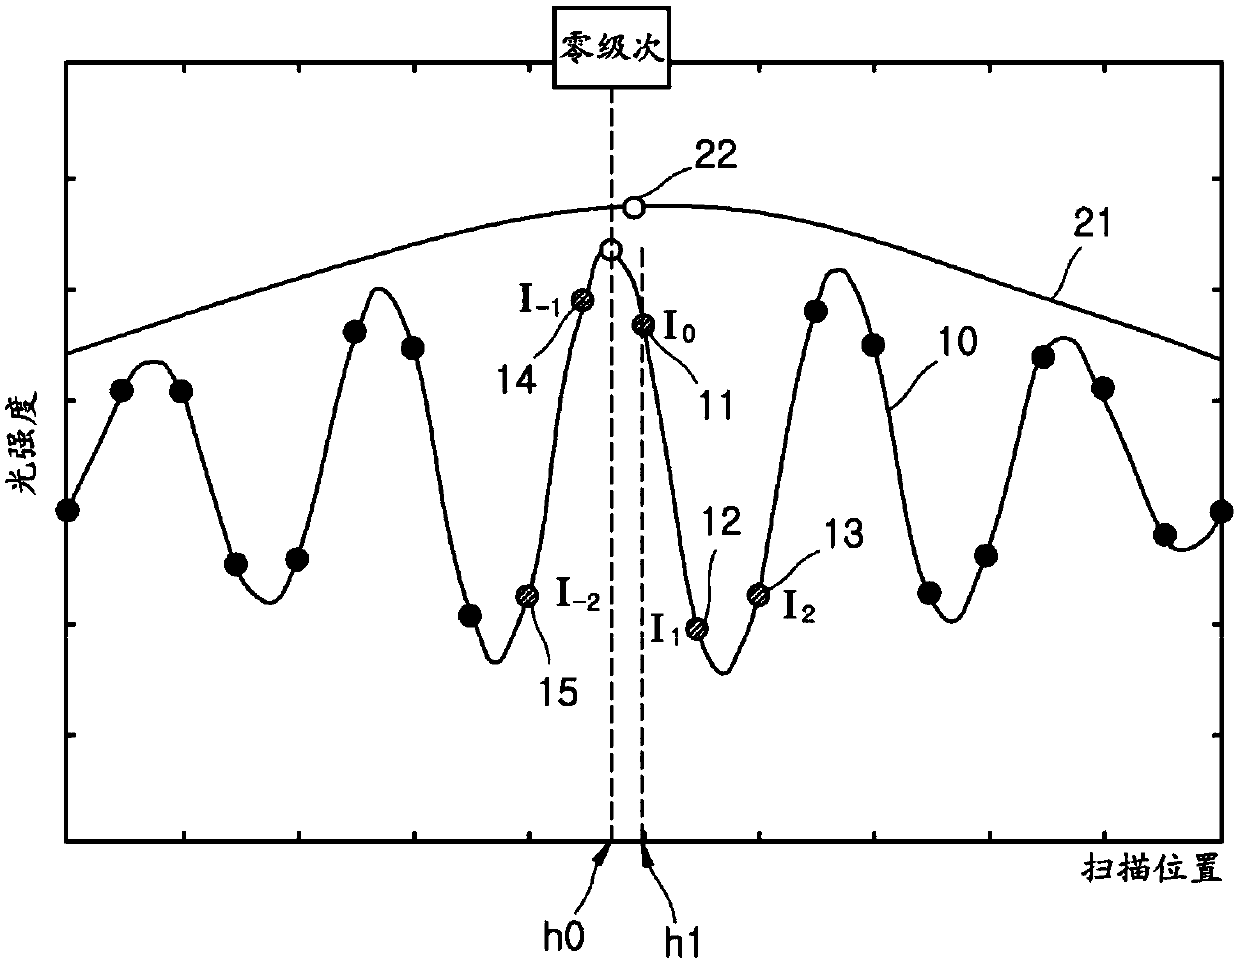 Method for correcting fringe order error in white light phase-shifting interferometer